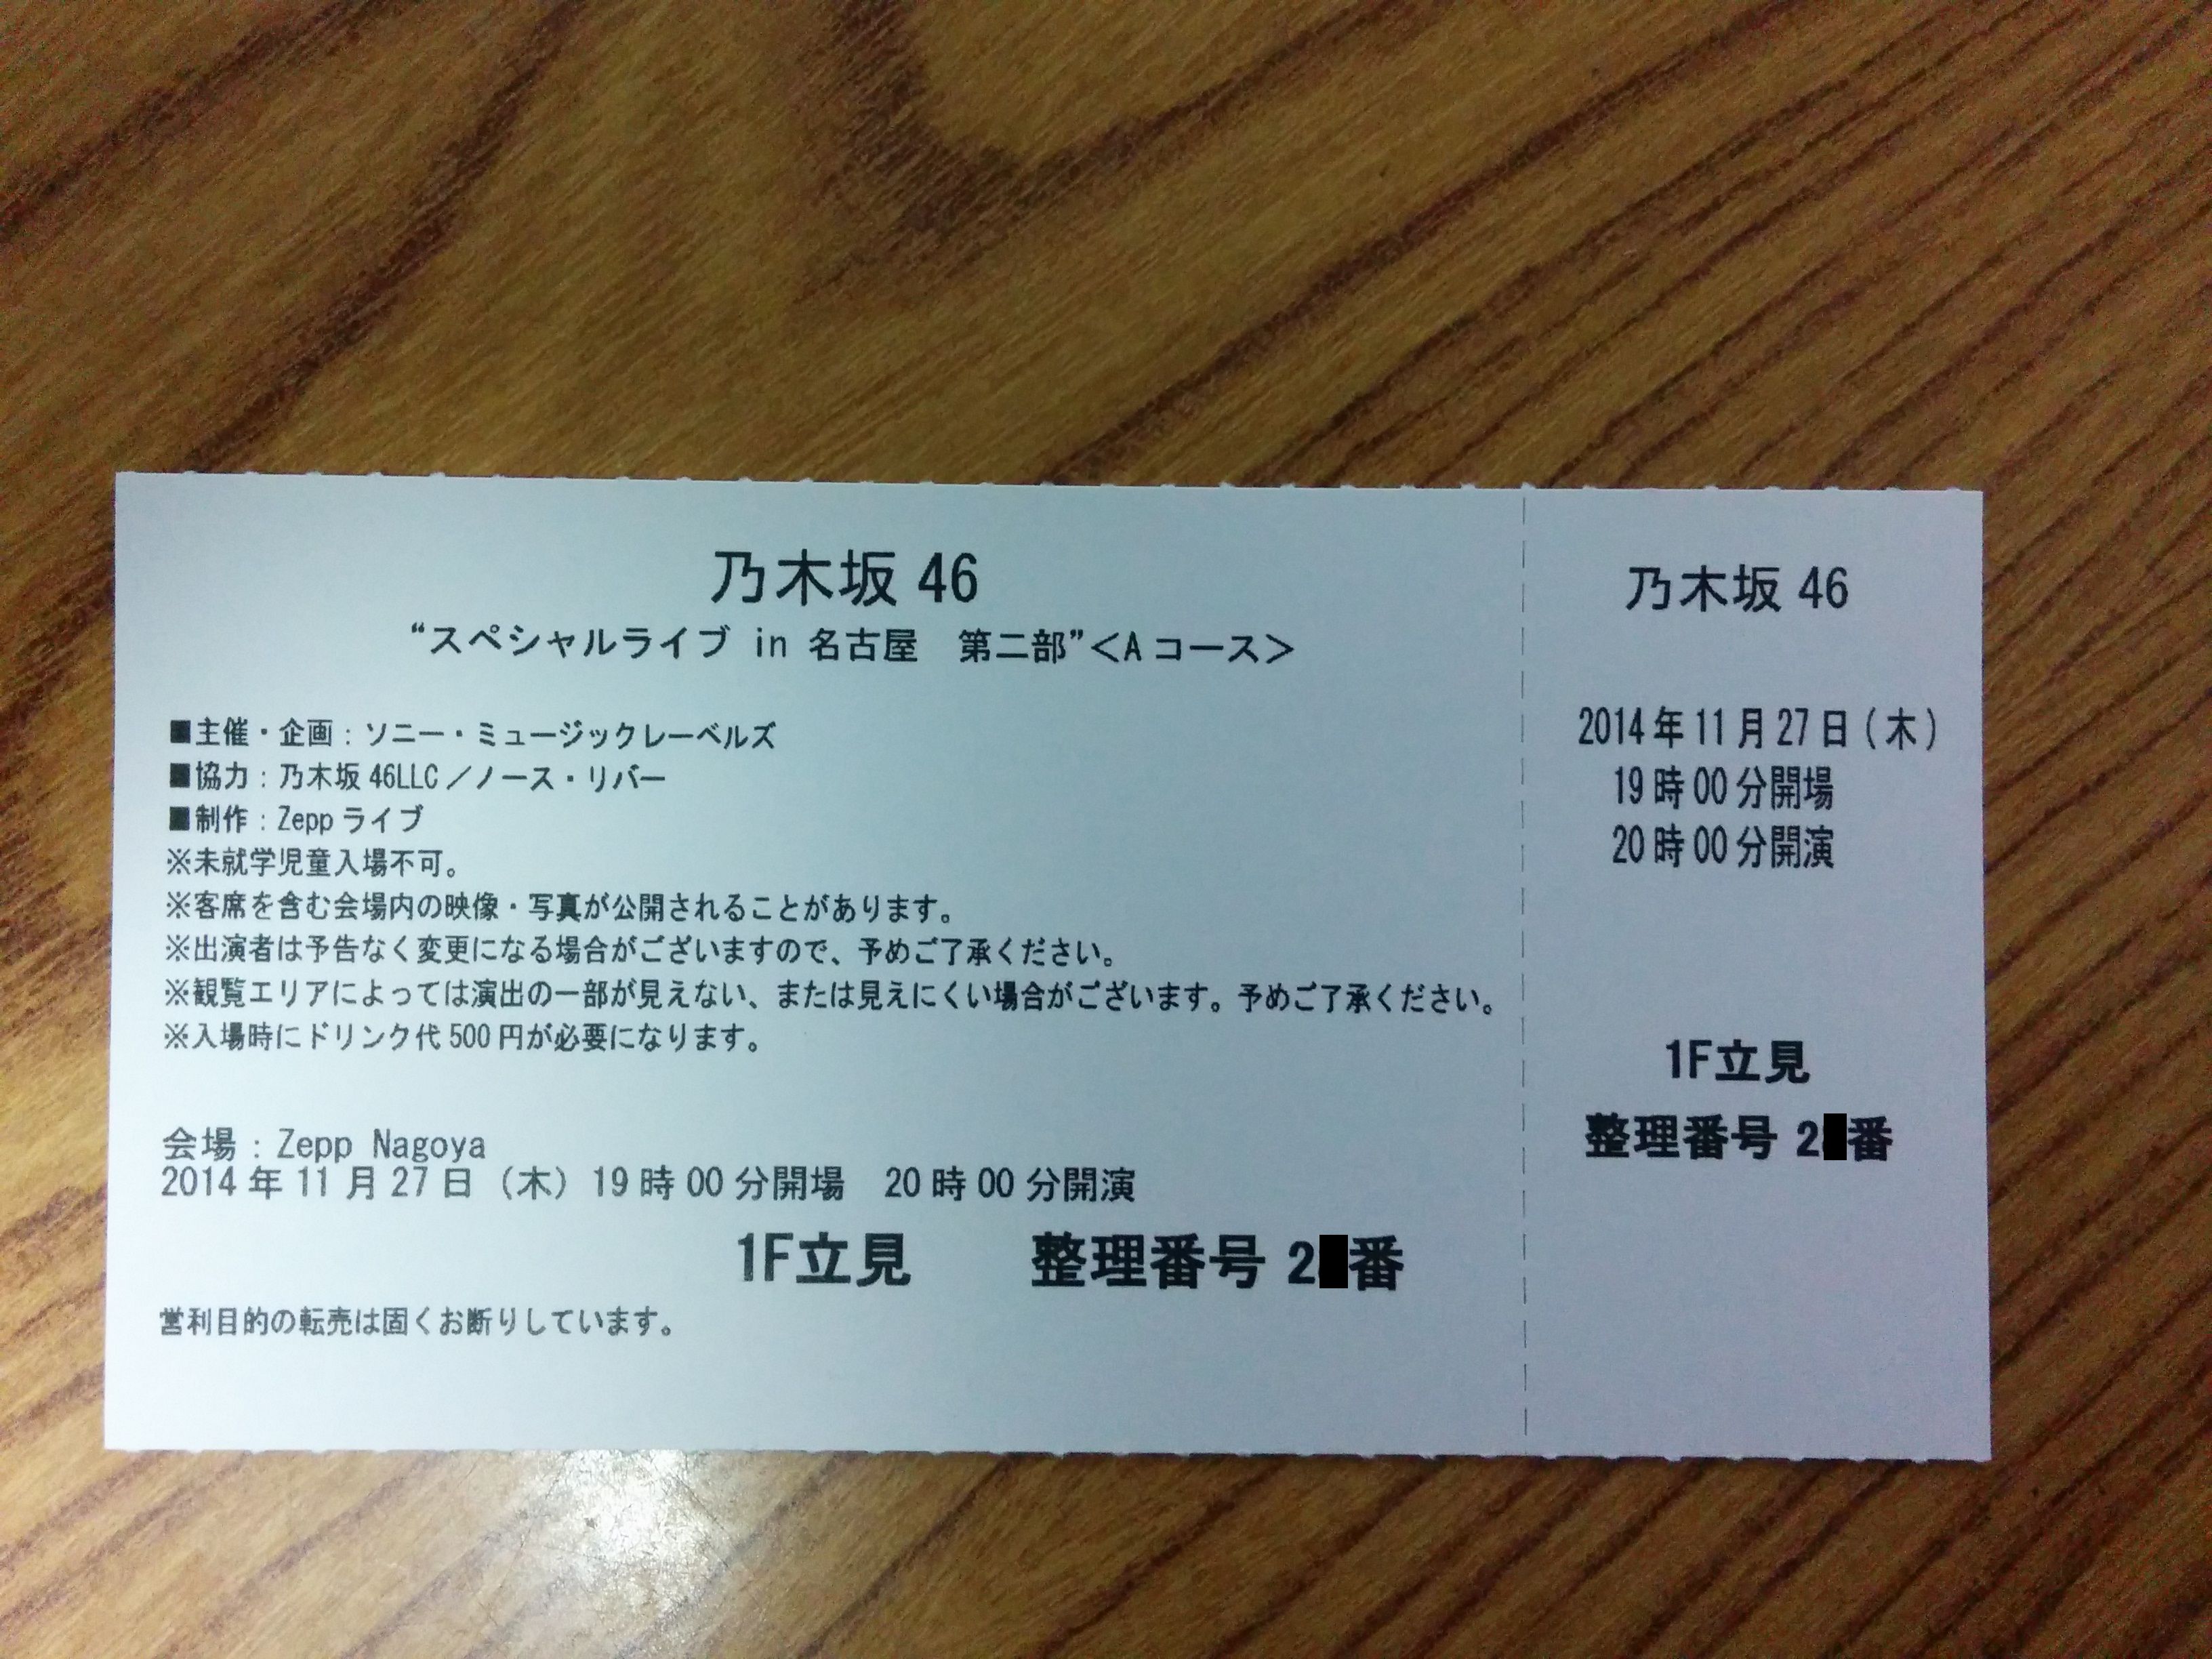 乃木坂46 スペシャルライブ チケット